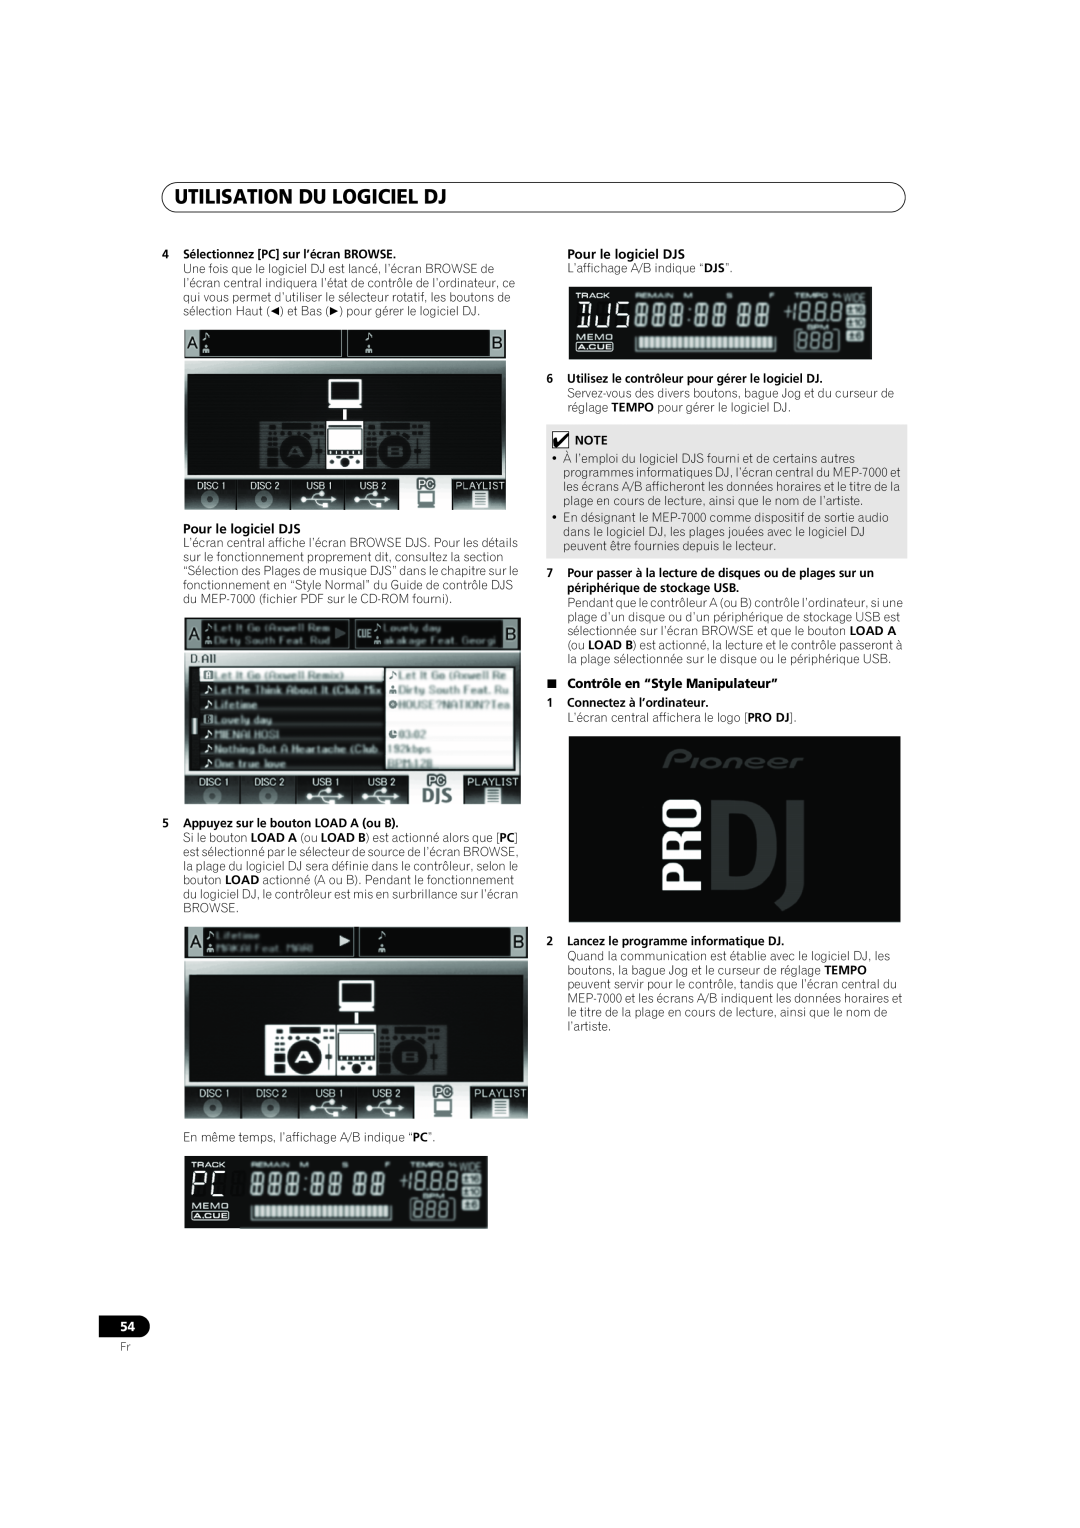 Pioneer MEP-7000 operating instructions Utilisation Du Logiciel Dj, Pour le logiciel DJS, Contrôle en “Style Manipulateur” 